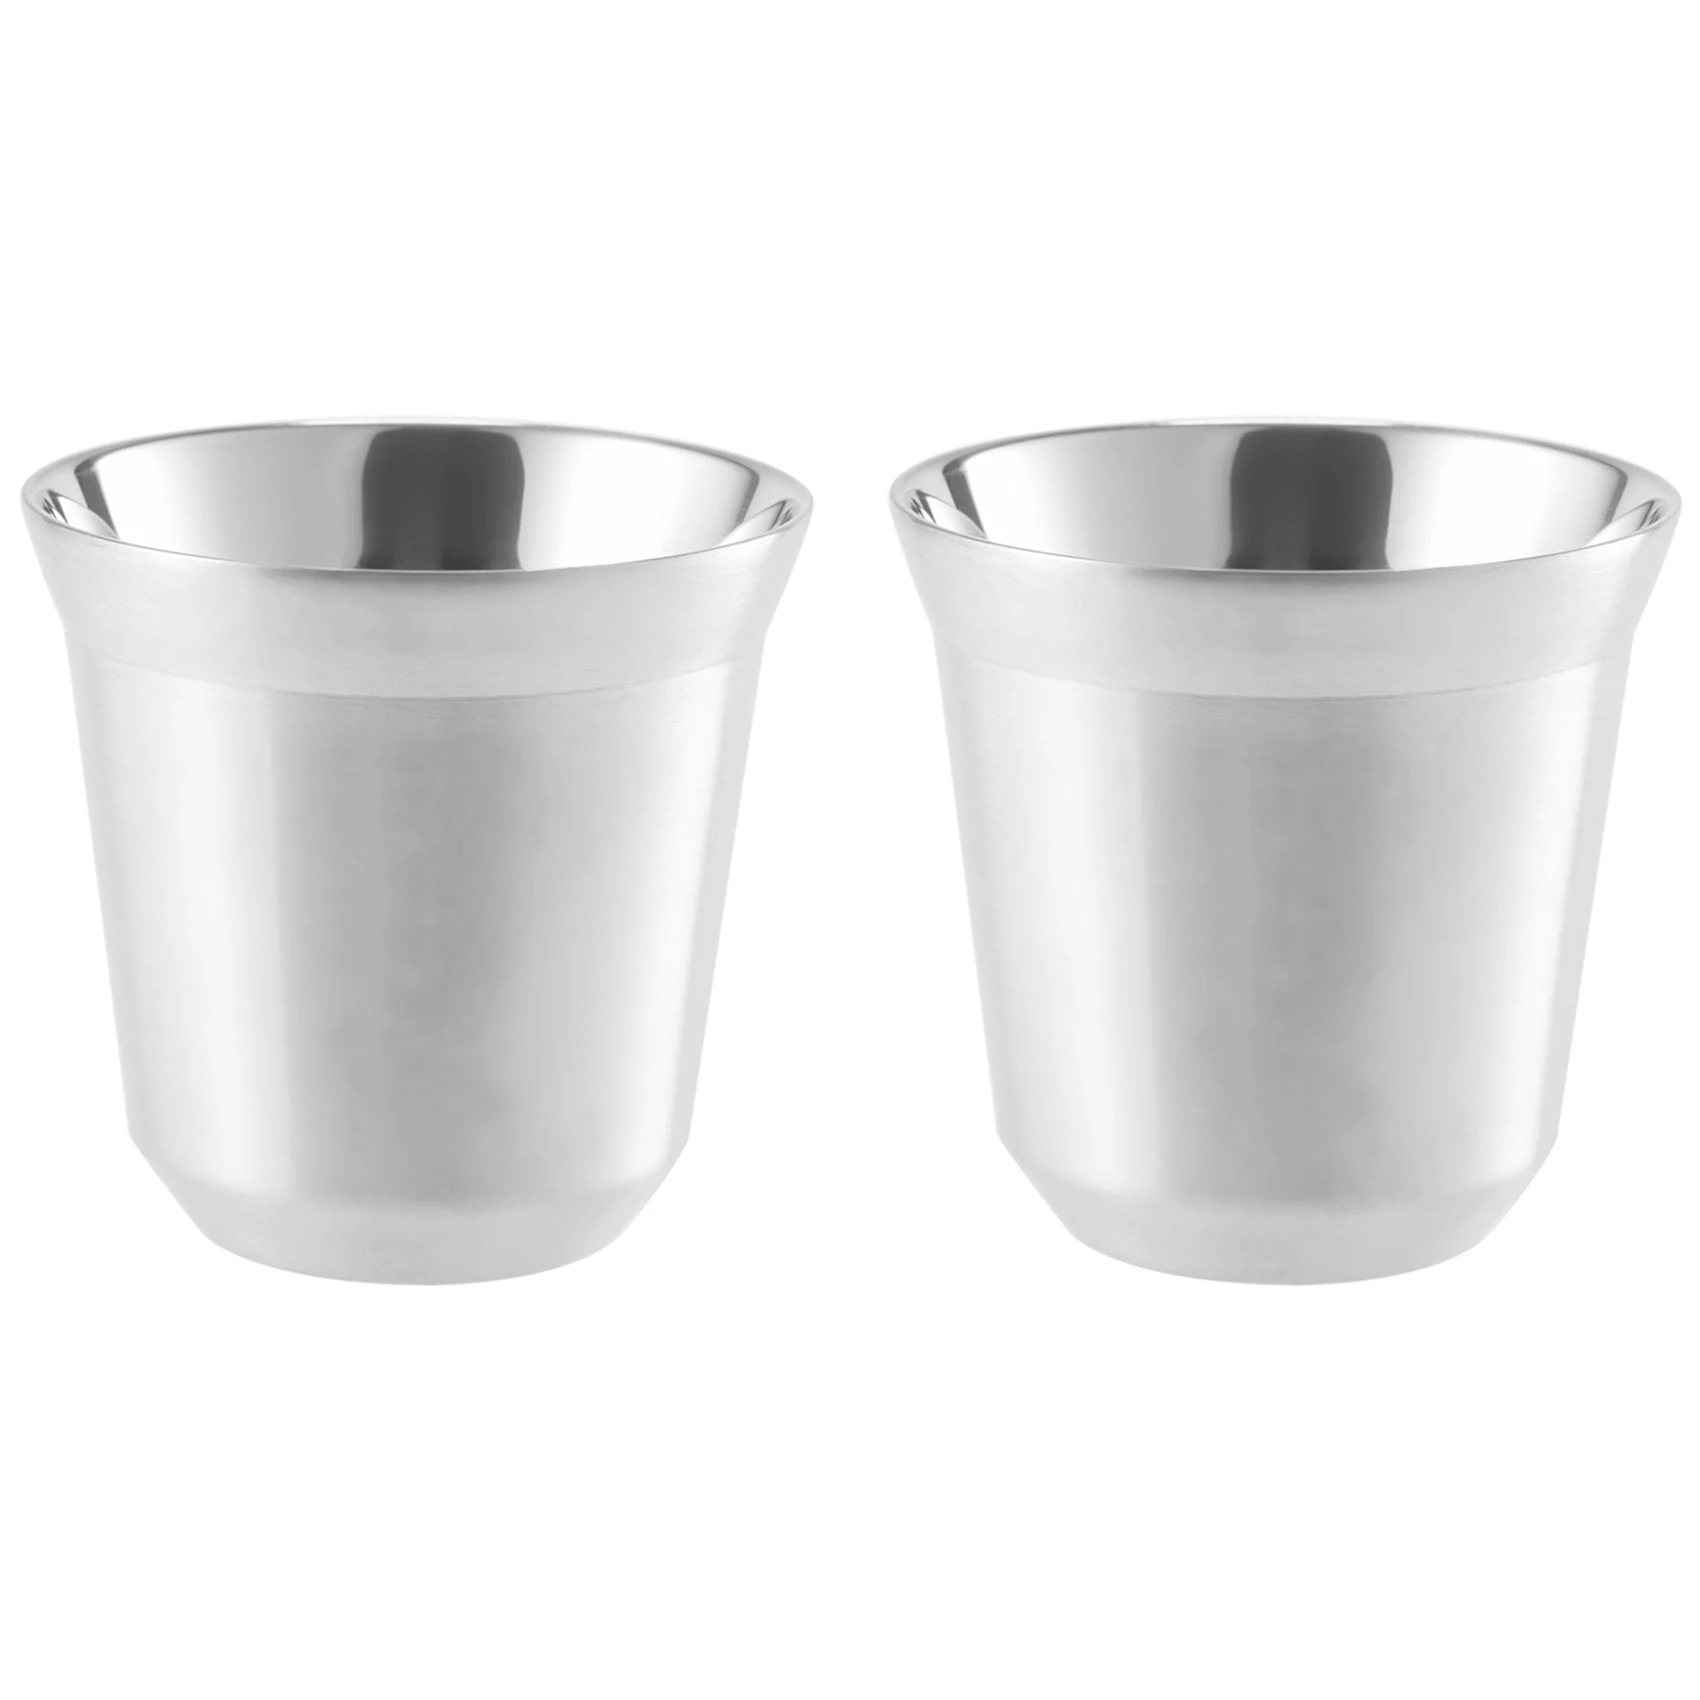 

Стальные чашки для эспрессо, набор из 2 предметов, изолированная двойная стена, легко чистить и мыть в посудомоечной машине (80 мл)